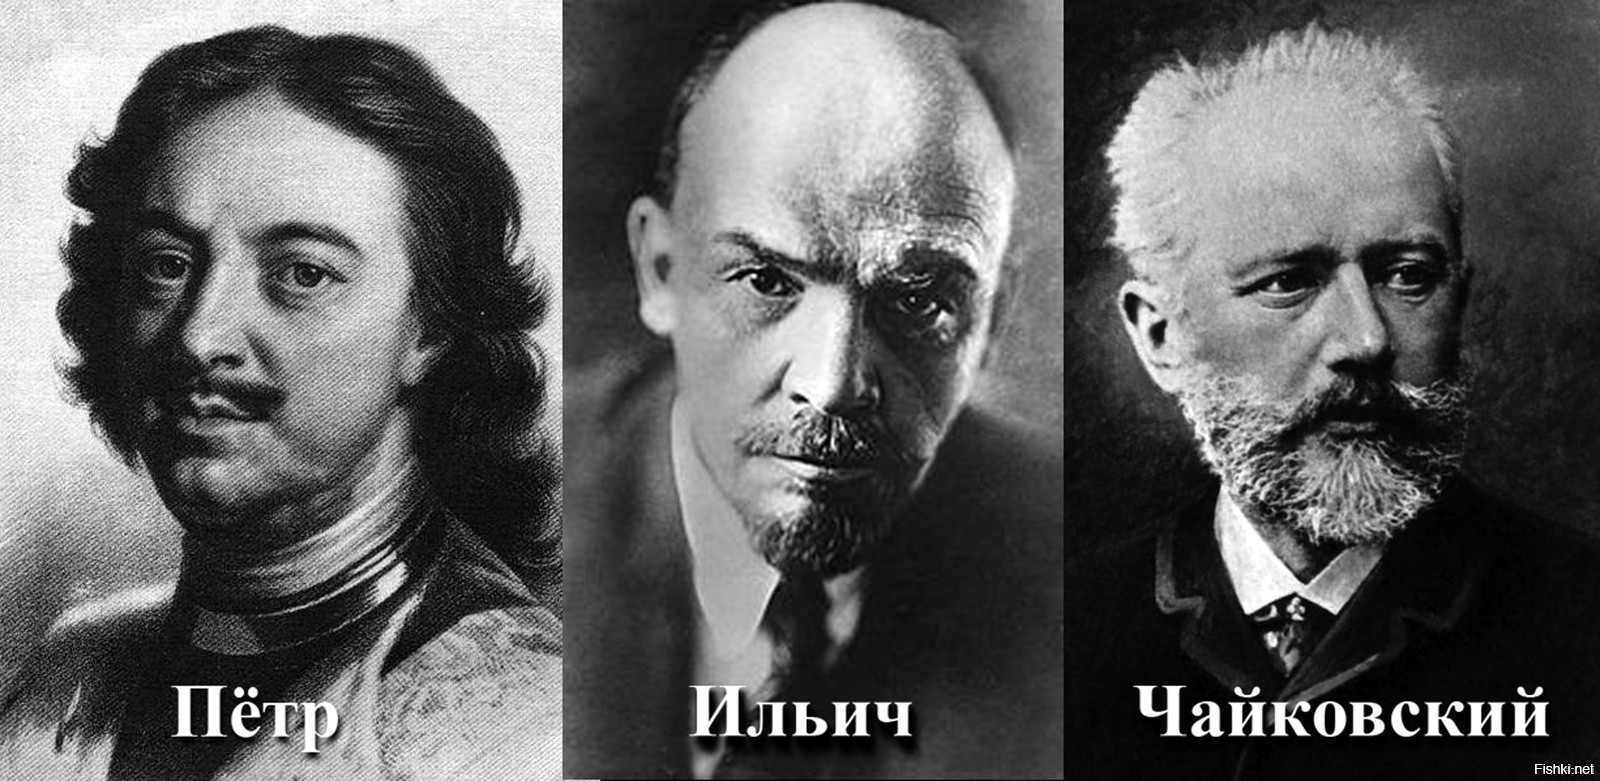 Оказывается Петр Ильич Чайковский это три разных человека